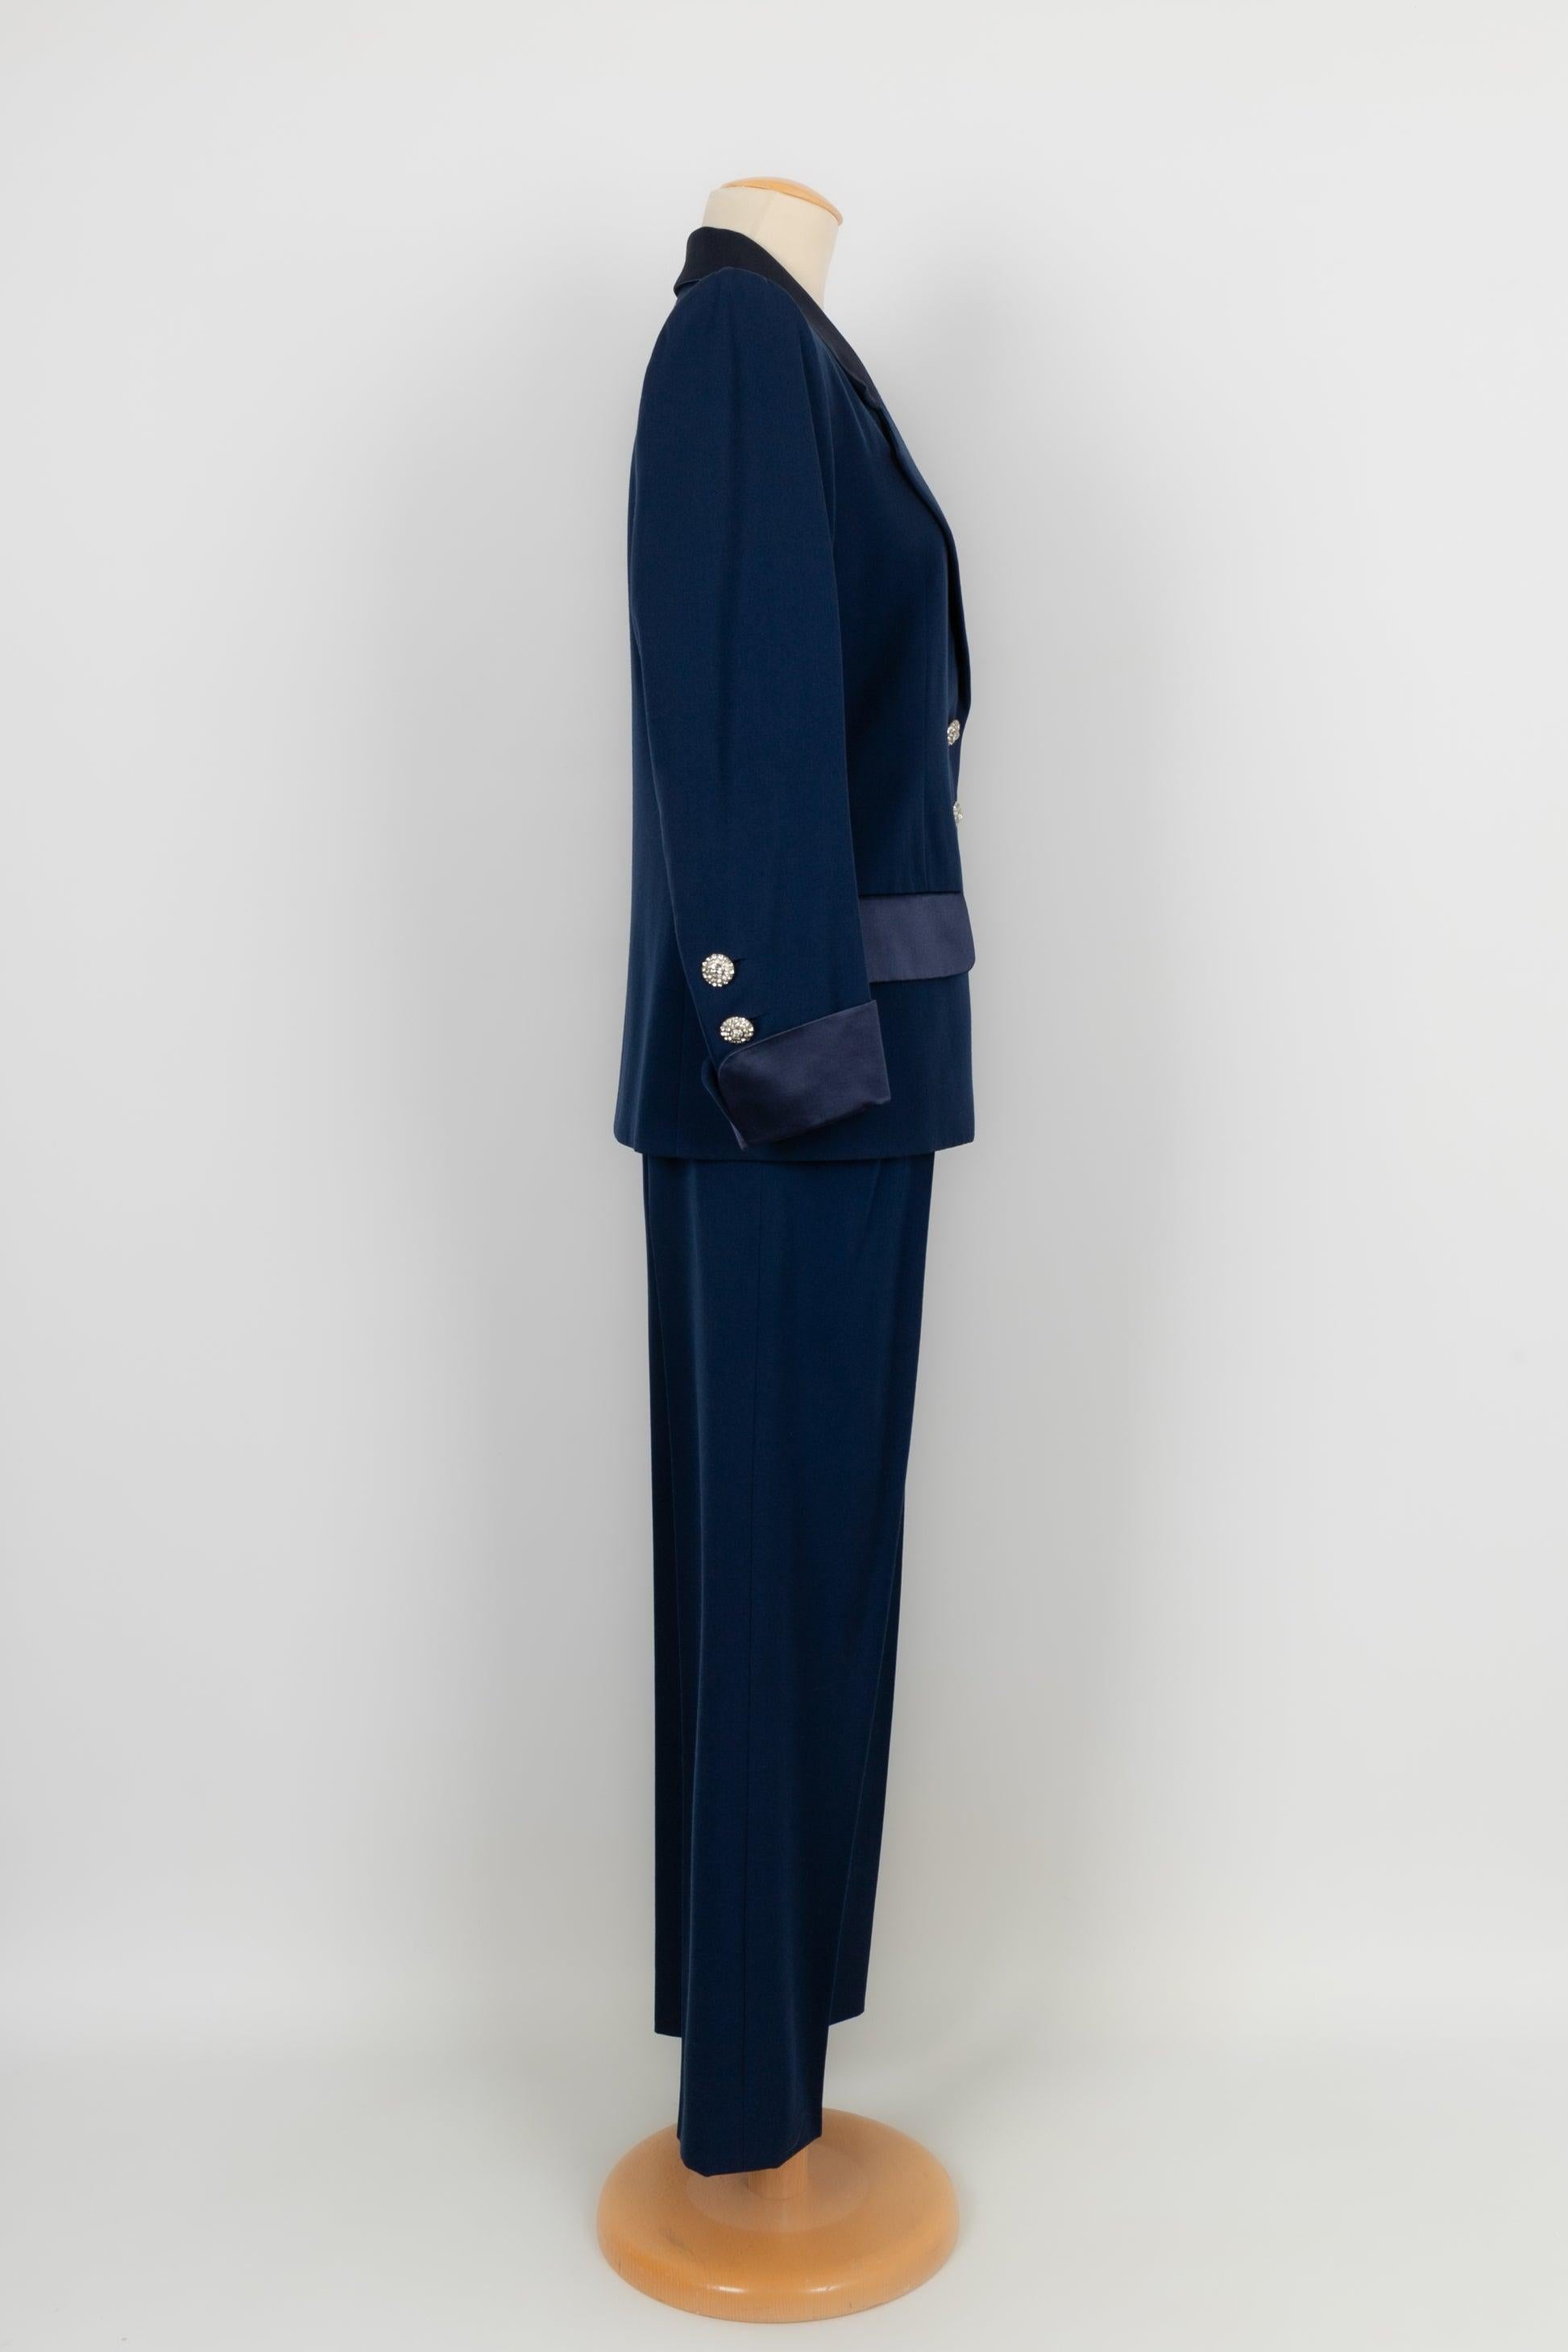 Costume pantalon haute couture Yves Saint Laurent bleu 36FR/38FR 1